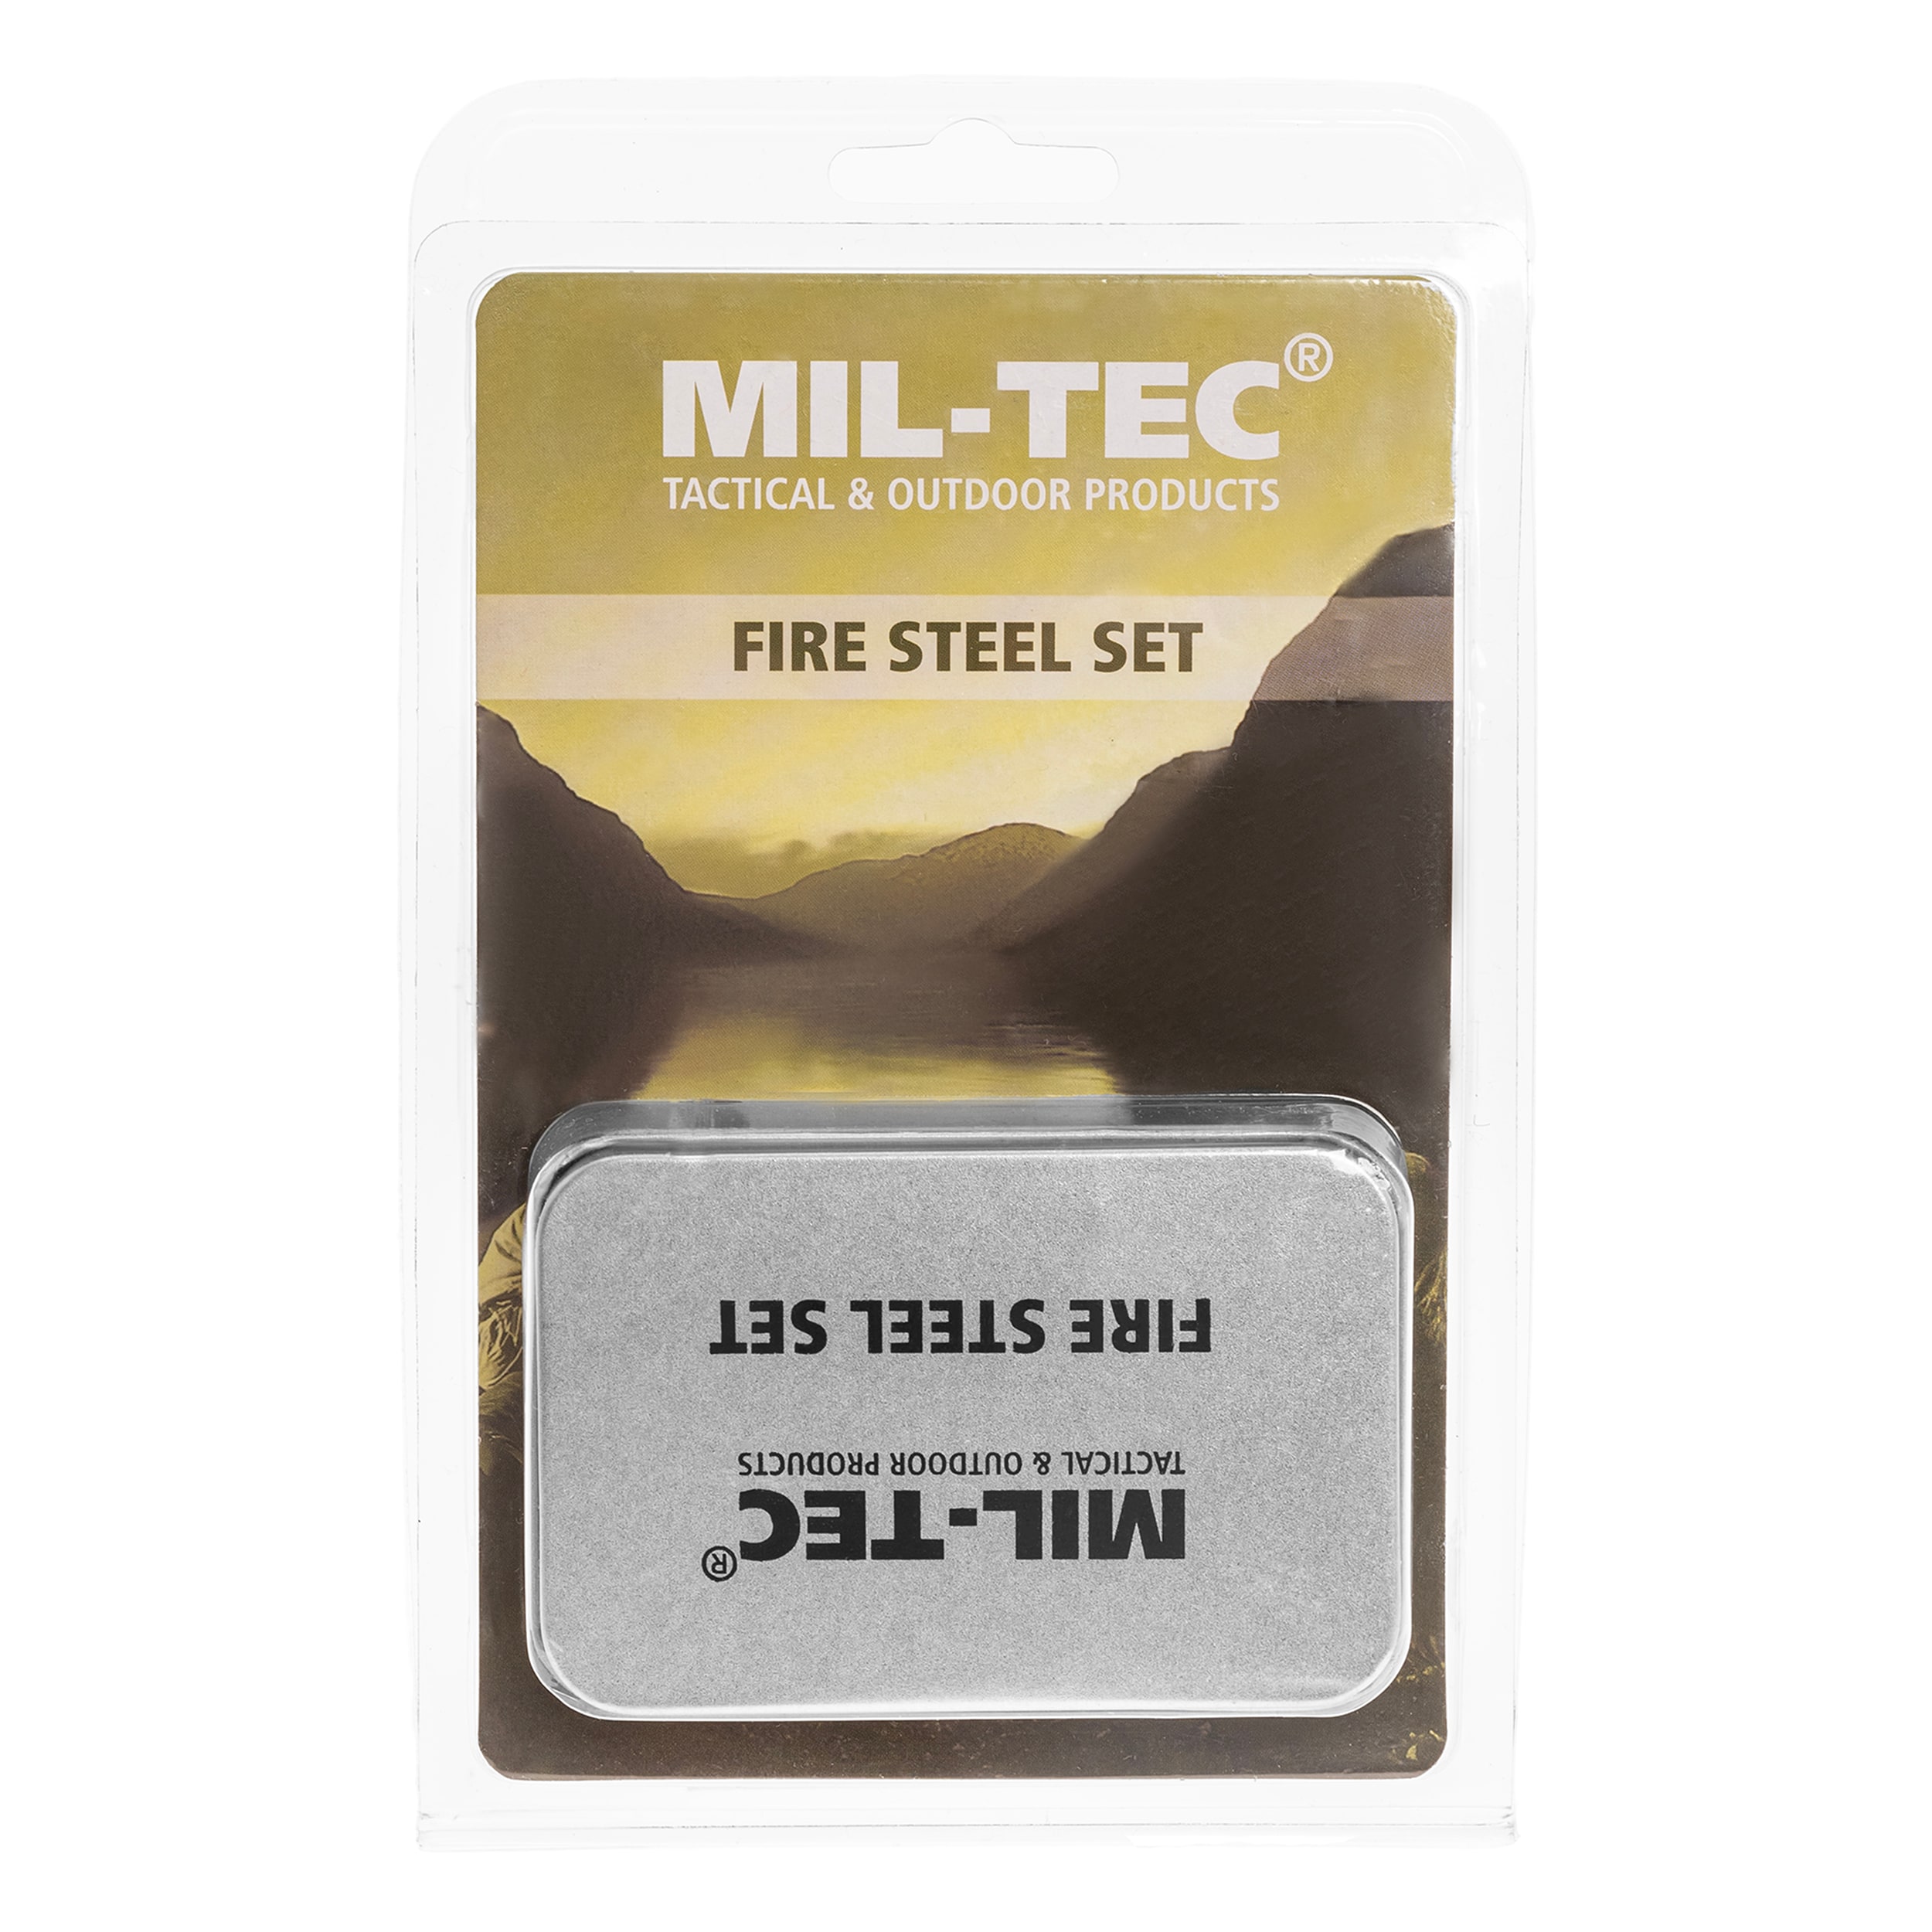 Zestaw survivalowy do rozpalania ognia Mil-Tec - Fire Steel Set